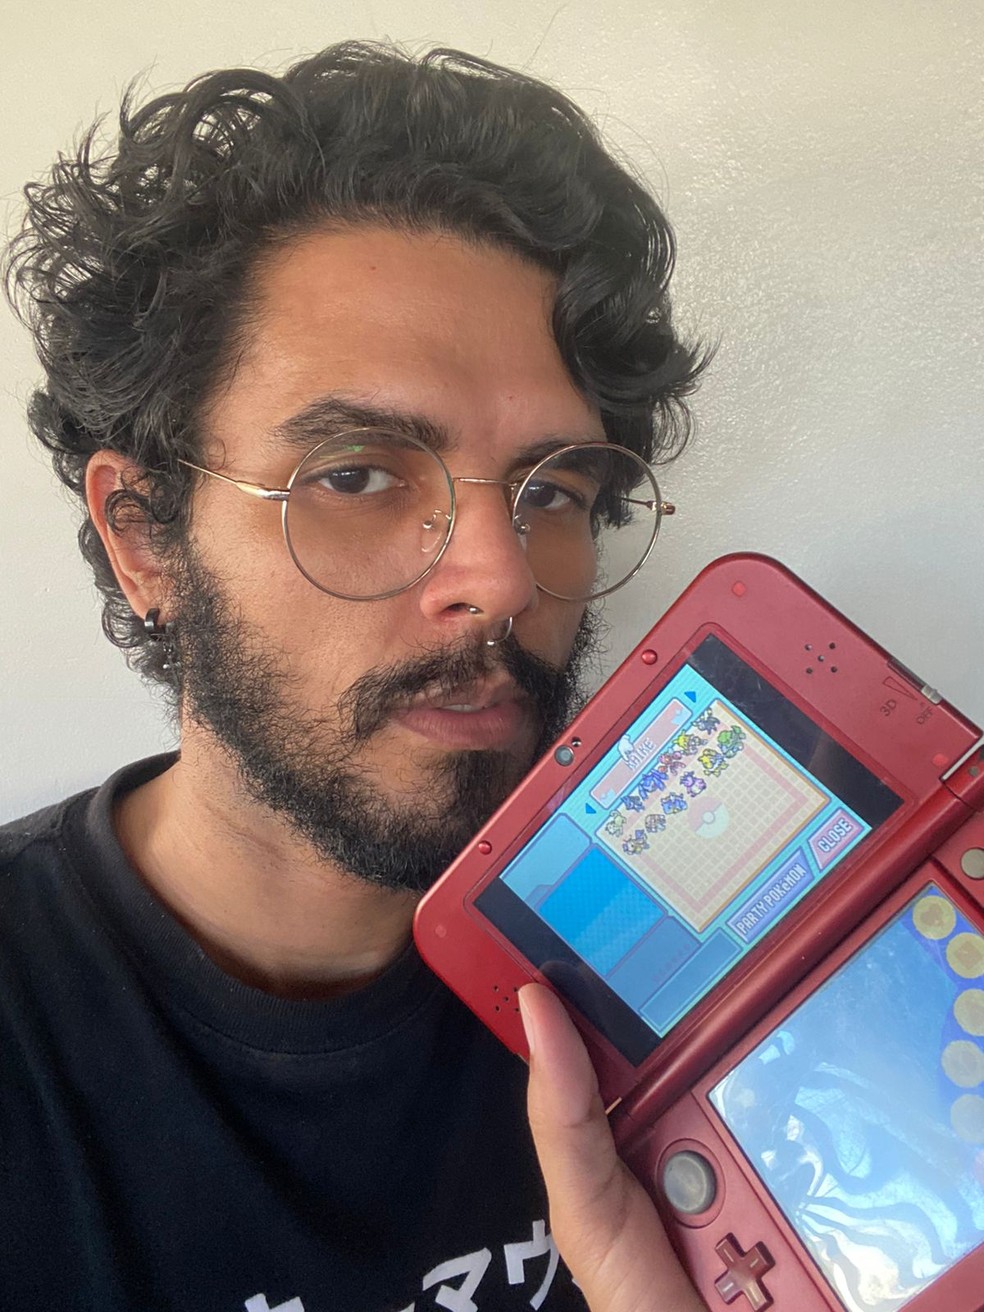 Icaro segurando Nintendo DS com time de pokémon do amigo falecido  — Foto: Acervo pessoal